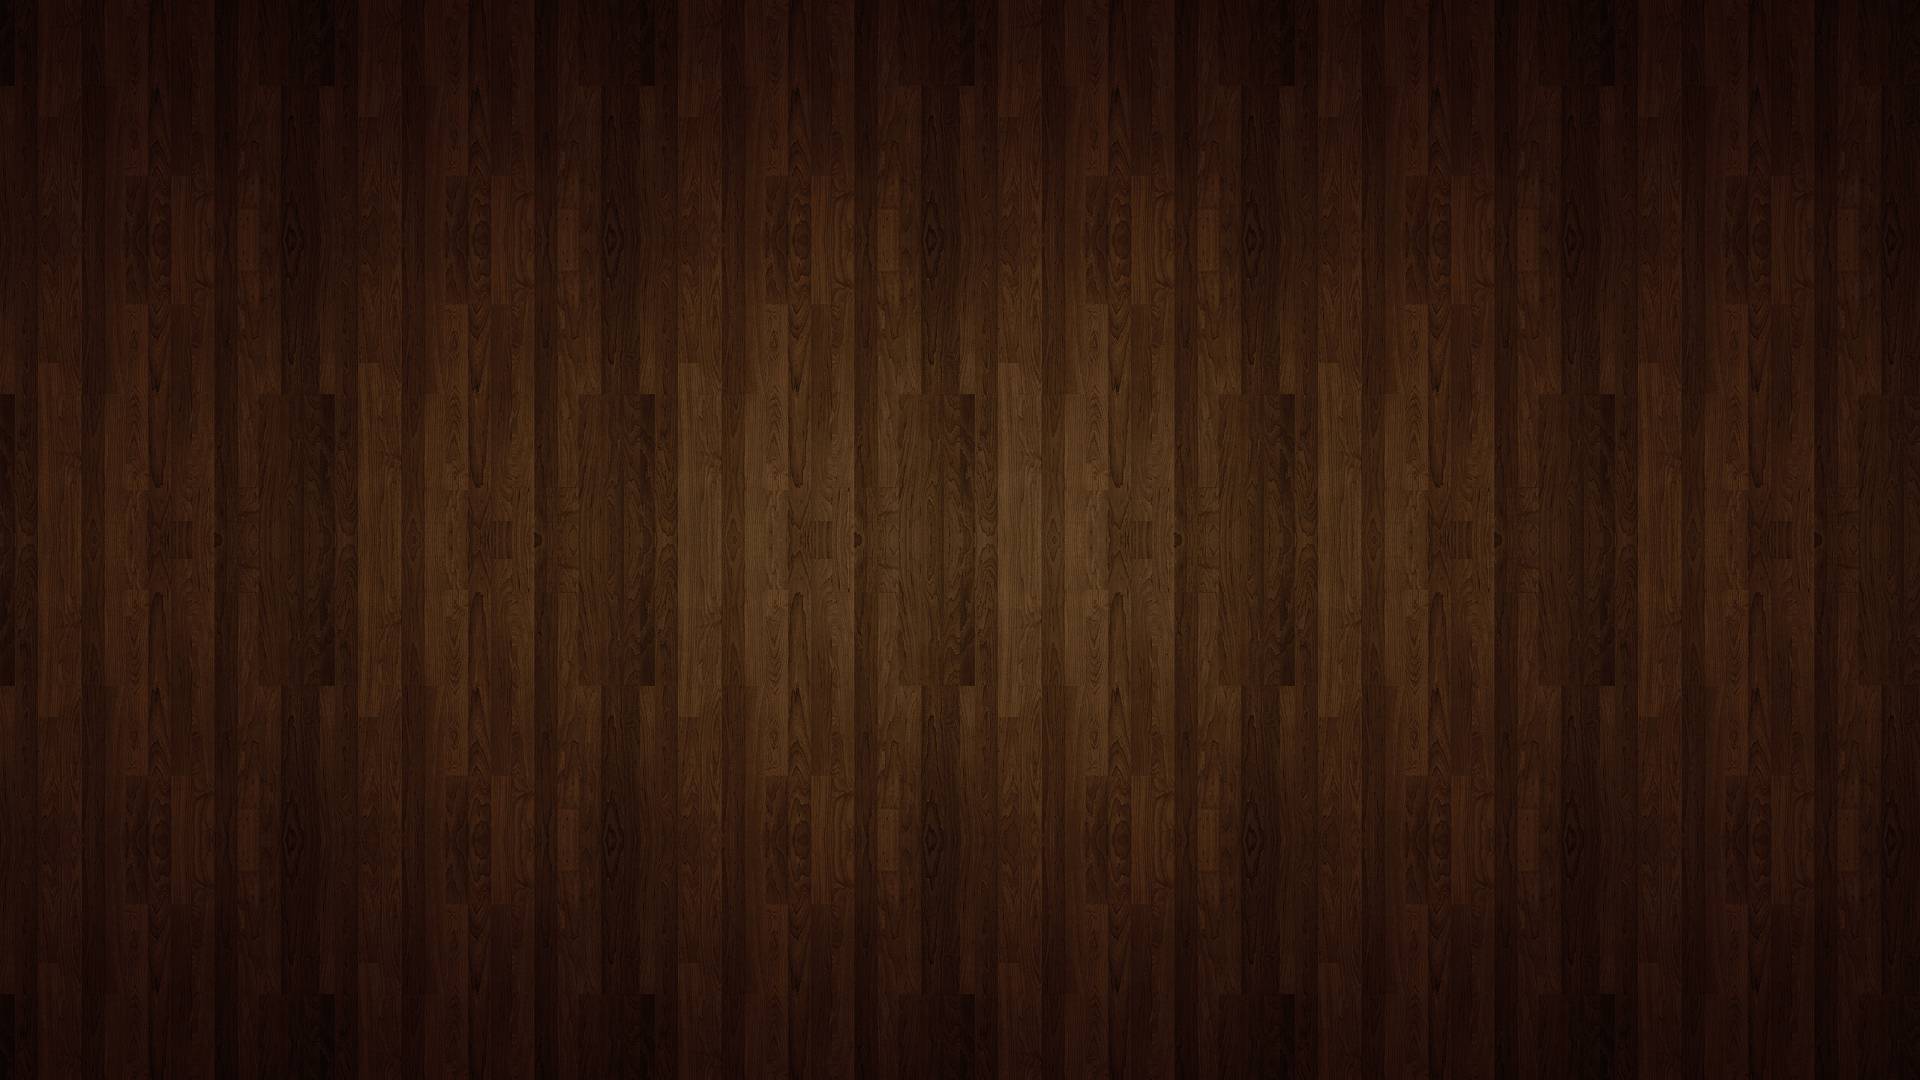 Đừng bỏ lỡ hình nền vân gỗ đẹp mắt này! Với sự pha trộn của các vân gỗ độc đáo và tinh tế, hình nền vân gỗ sẽ thổi hồn cho ngôi nhà của bạn và giúp bạn tạo nên một không gian sống đầy tính thẩm mỹ.